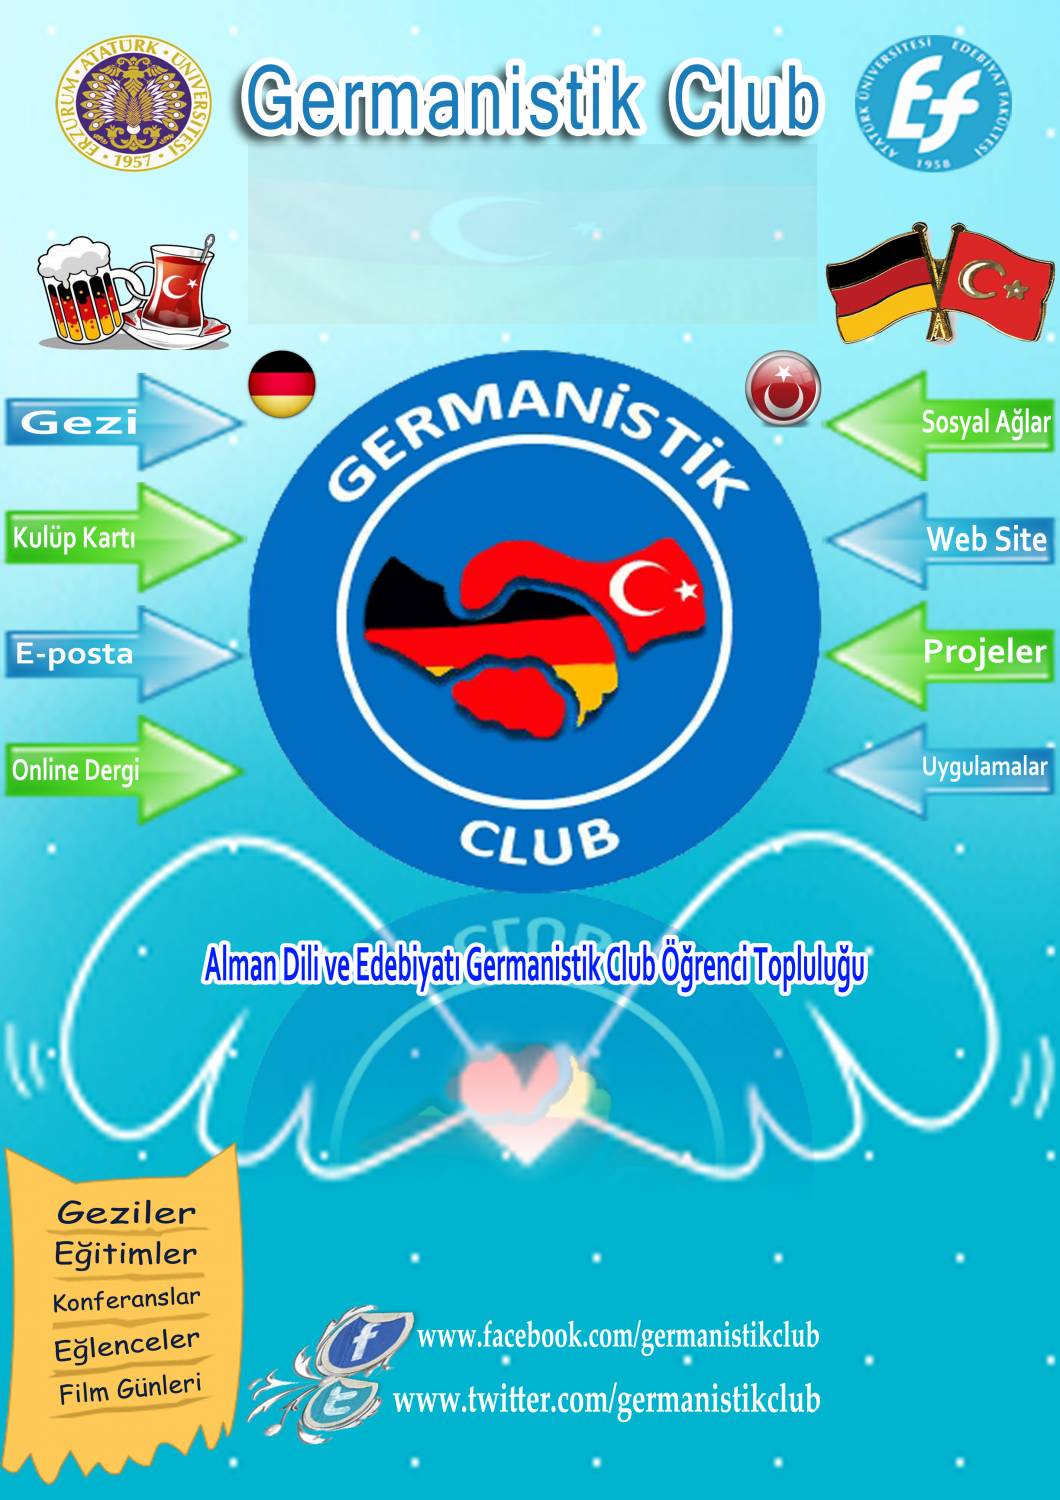 Germanistik Club Ausbildung Broschur